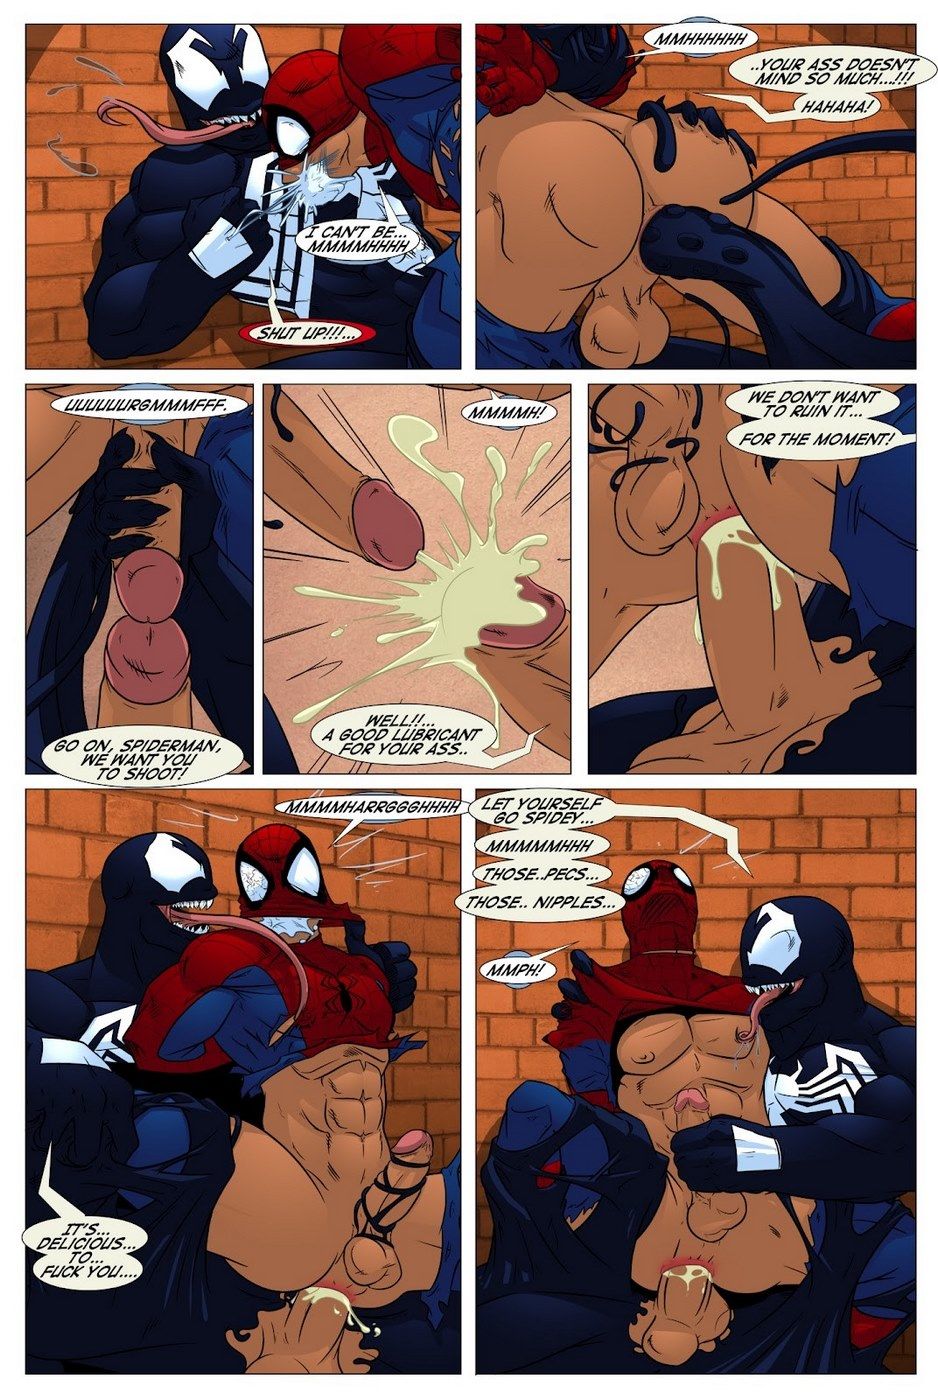 Shooters (Spider-Man Venom) page 13